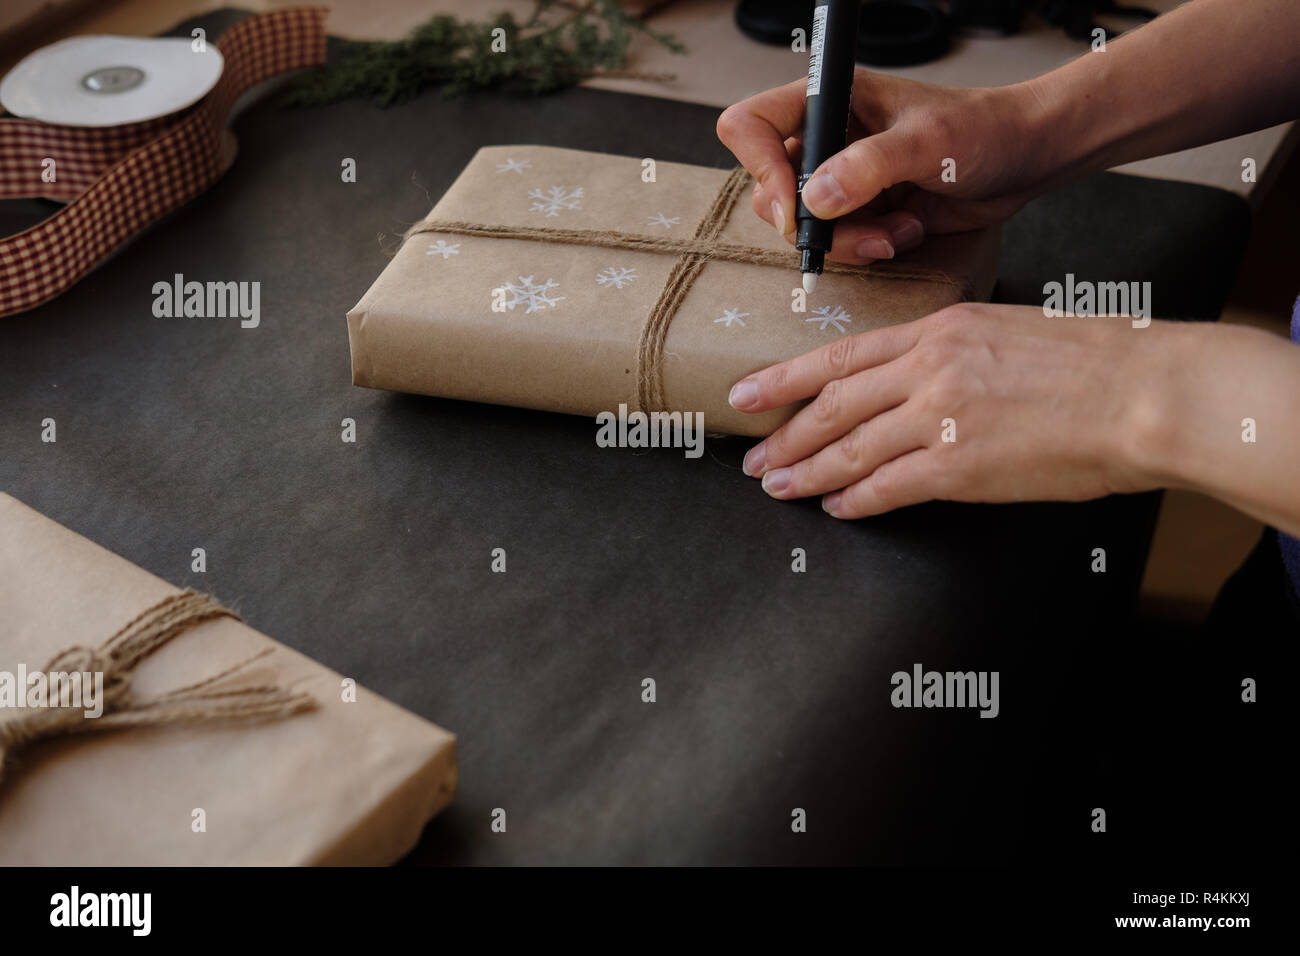 Frau Zeichnung auf Papier Schneeflocken Paket Weihnachten, Geschenk auf schwarzem Hintergrund. Weibliche Hände malen auf Geschenke für Winterurlaub. Weihnachten, Ne Stockfoto